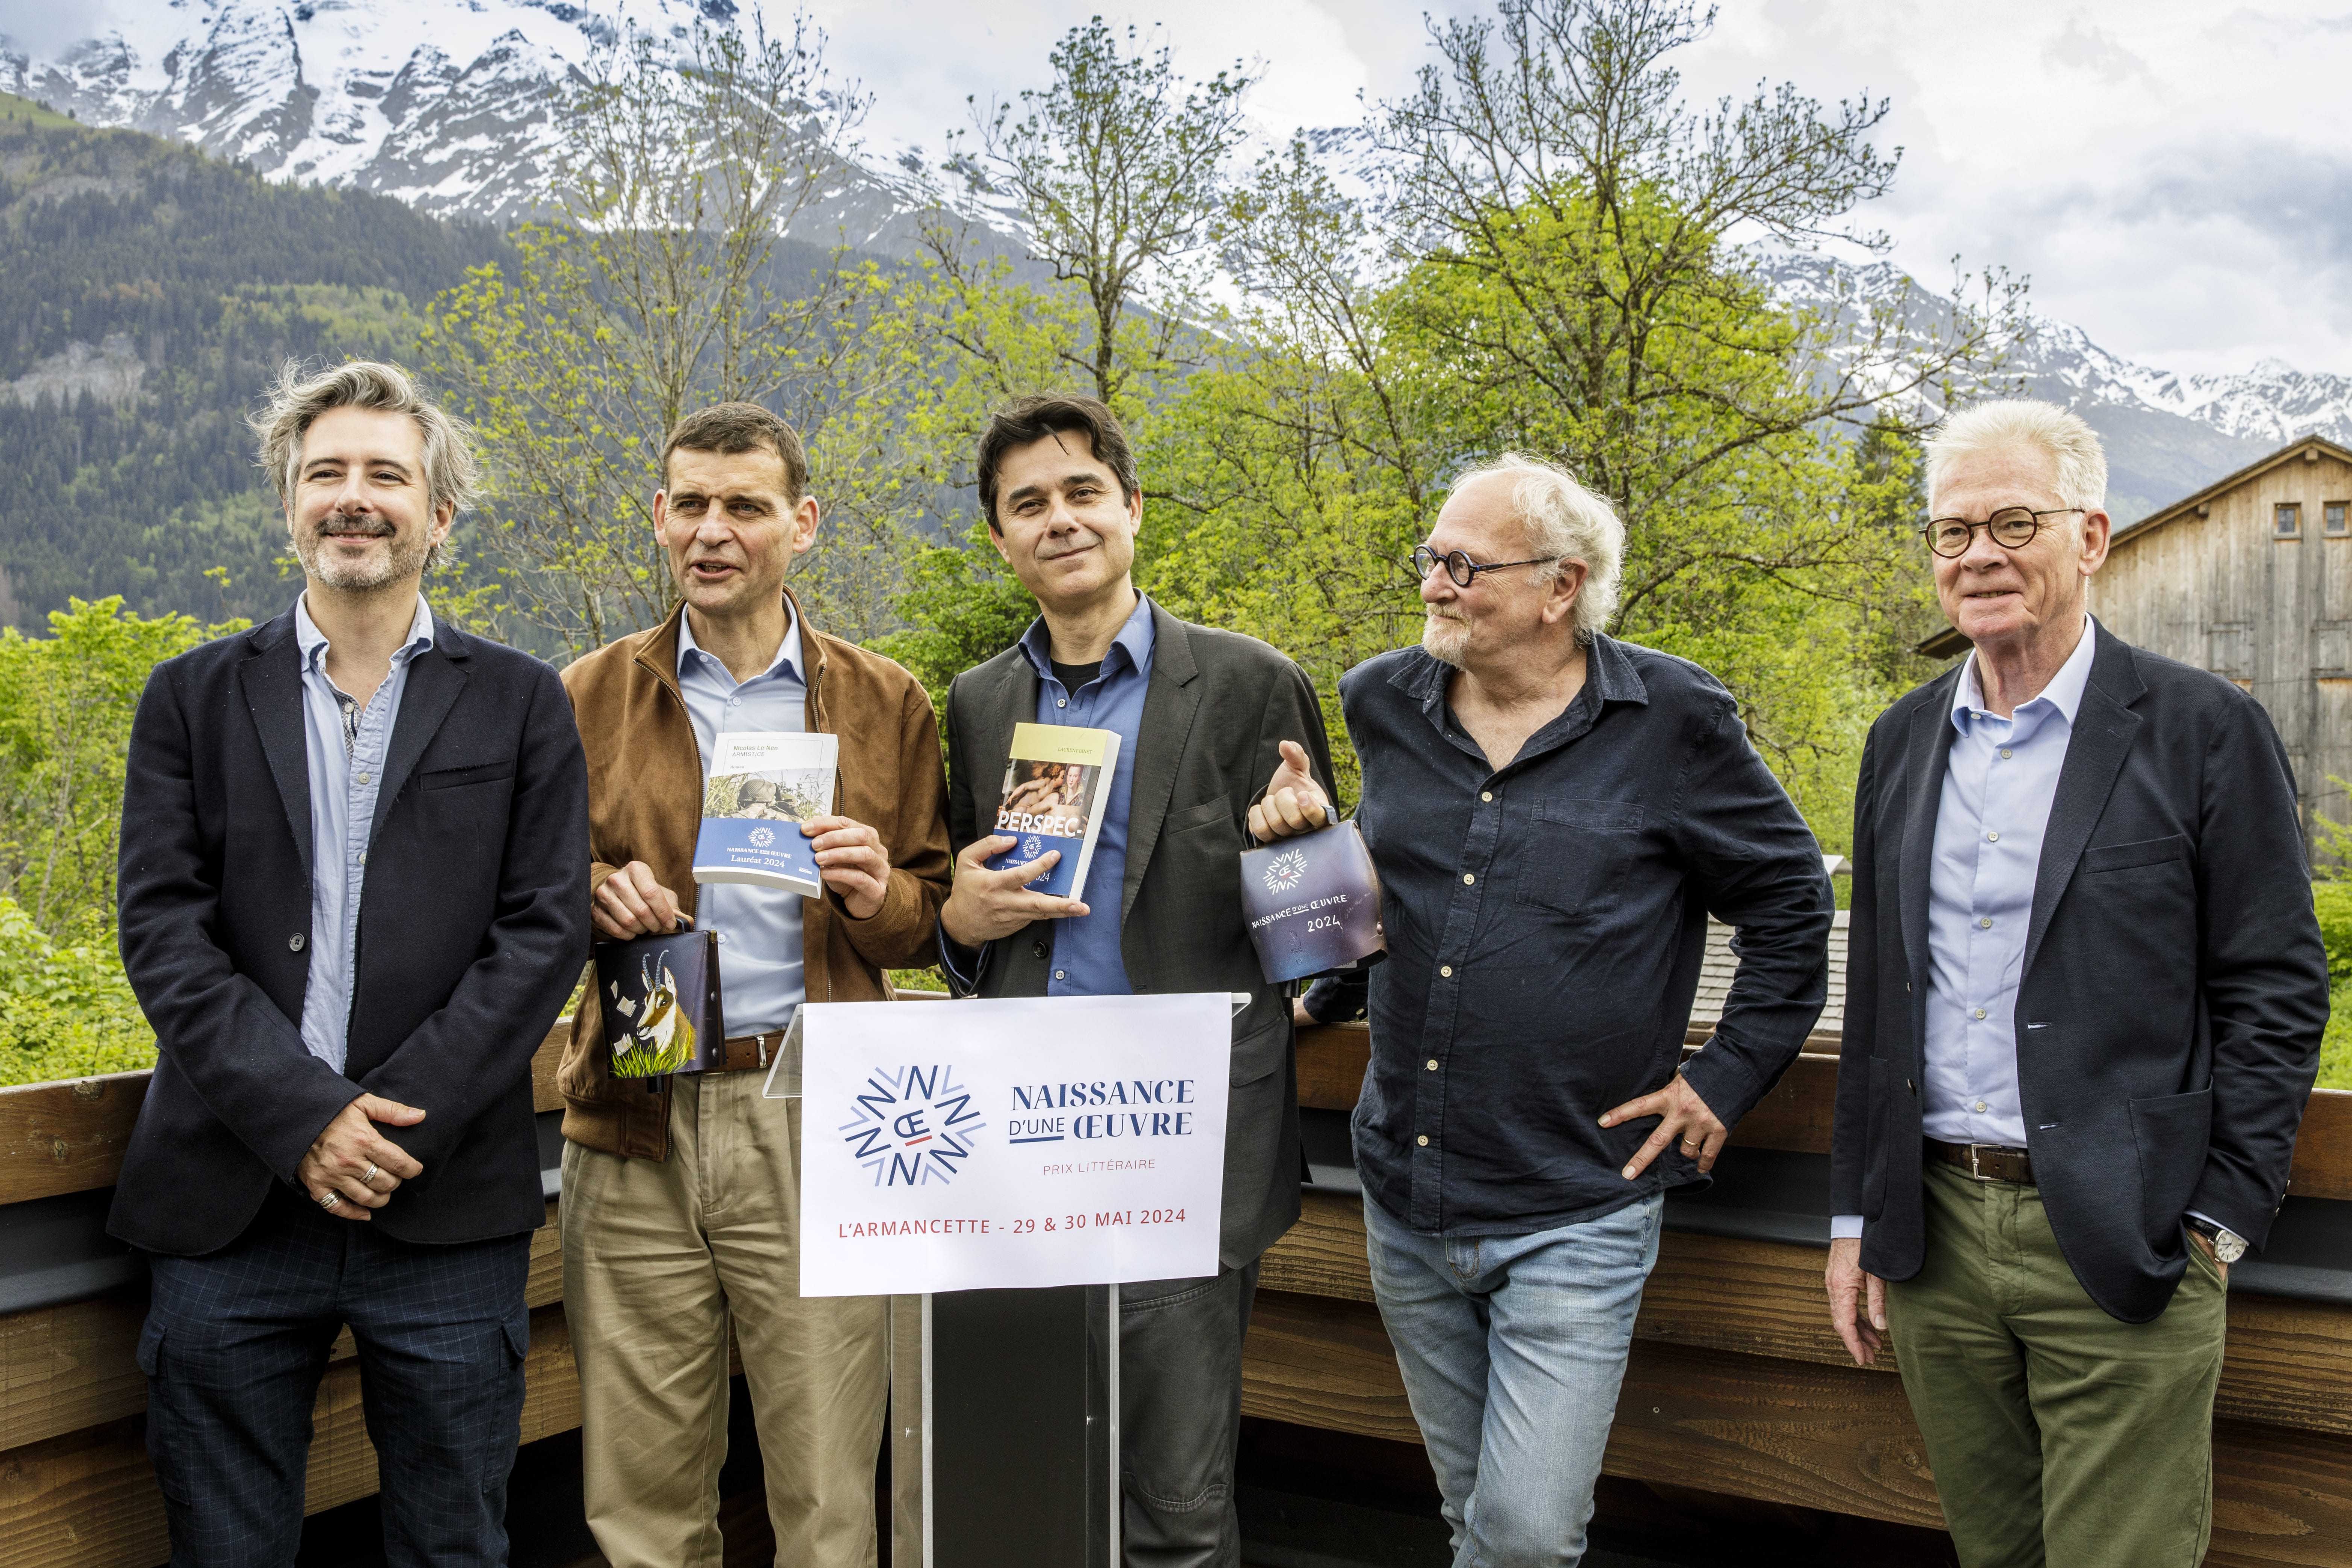 Tous les lauréats du Prix Naissance d'une oeuvre, accompagnés du maire de Saint-Gervais-les-Bains, Jean-Marc Peillex. ActuaLitté.